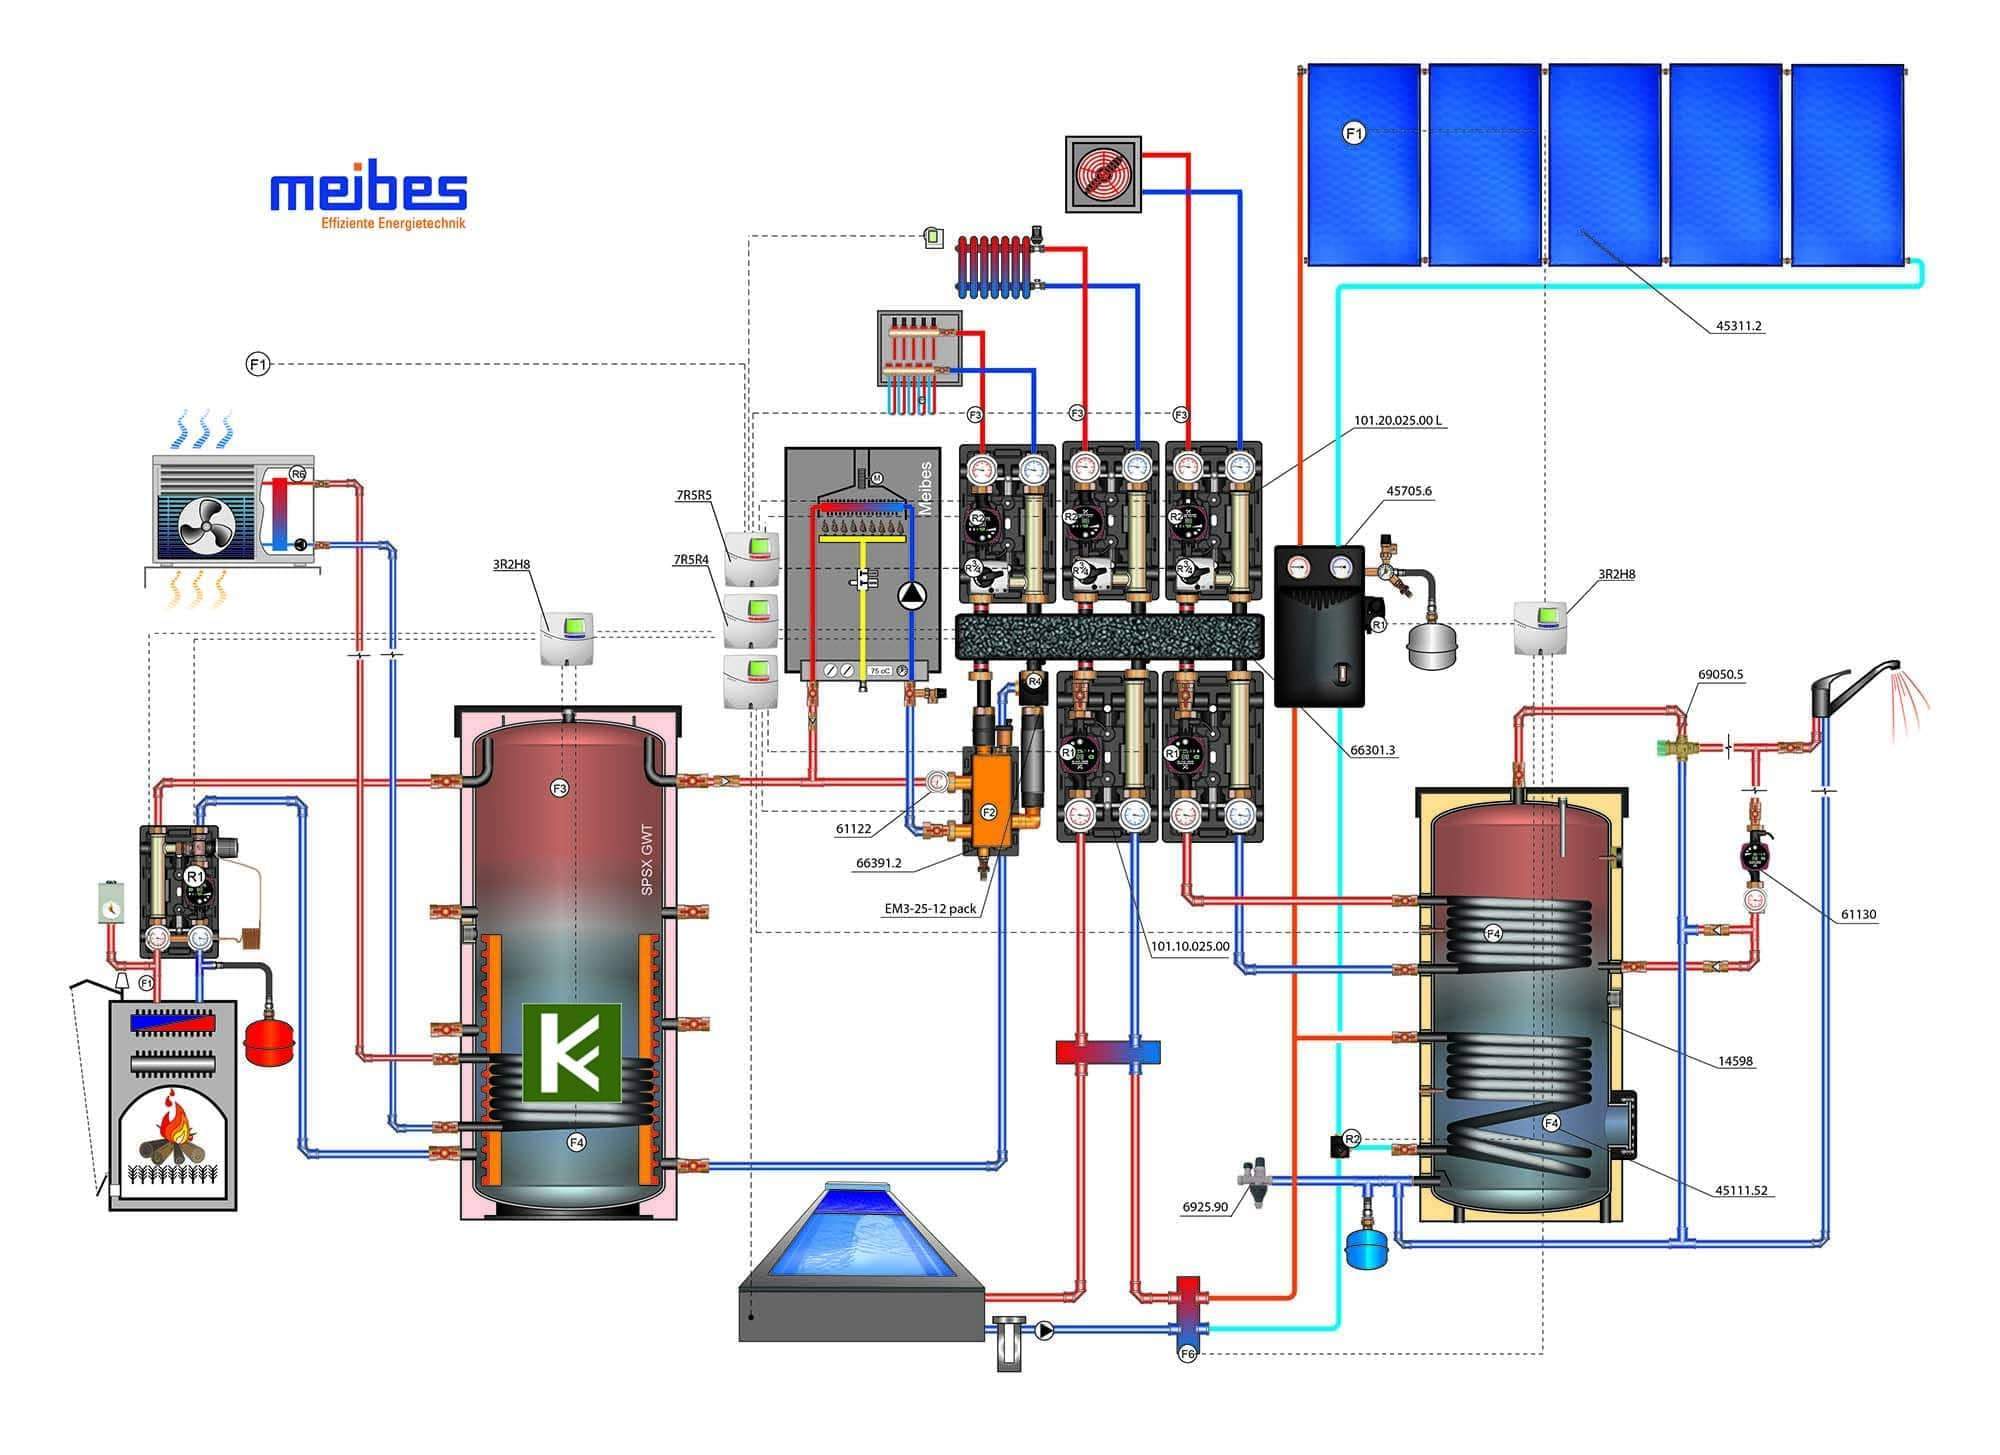 Схема Meibes (Майбес) - газовый котел отопления дома, коттеджа, загородного дома, система отопления, радиаторы и водяной теплый пол, твердотопливный котел, тепловой насос, солнечный коллектор